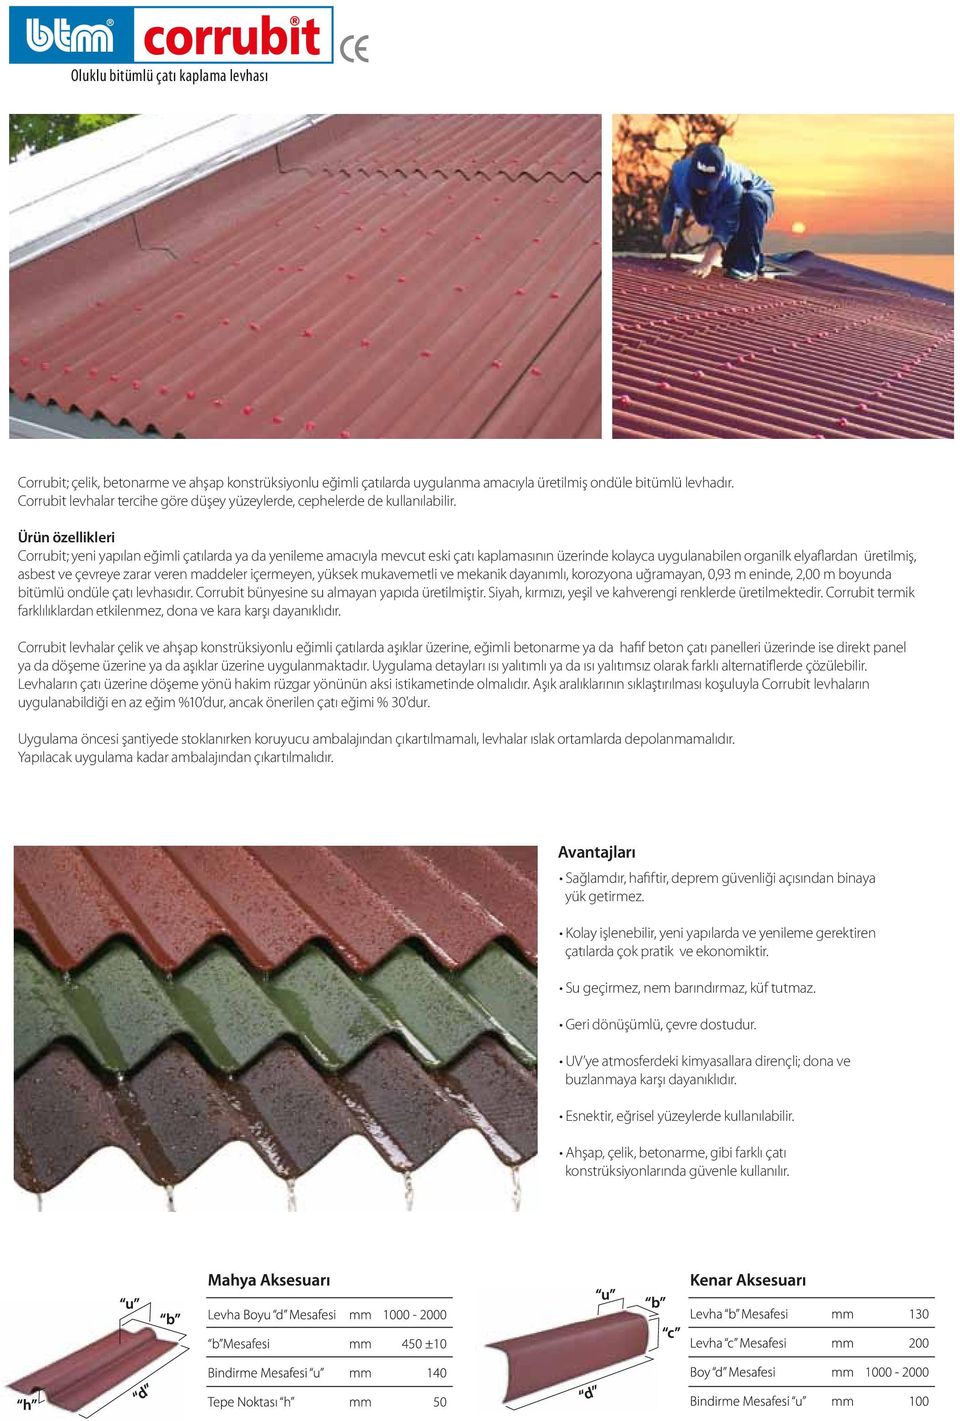 Ürün özellikleri Corrubit; yeni yapılan eğimli çatılarda ya da yenileme amacıyla mevcut eski çatı kaplamasının üzerinde kolayca uygulanabilen organilk elyaflardan üretilmiş, asbest ve çevreye zarar